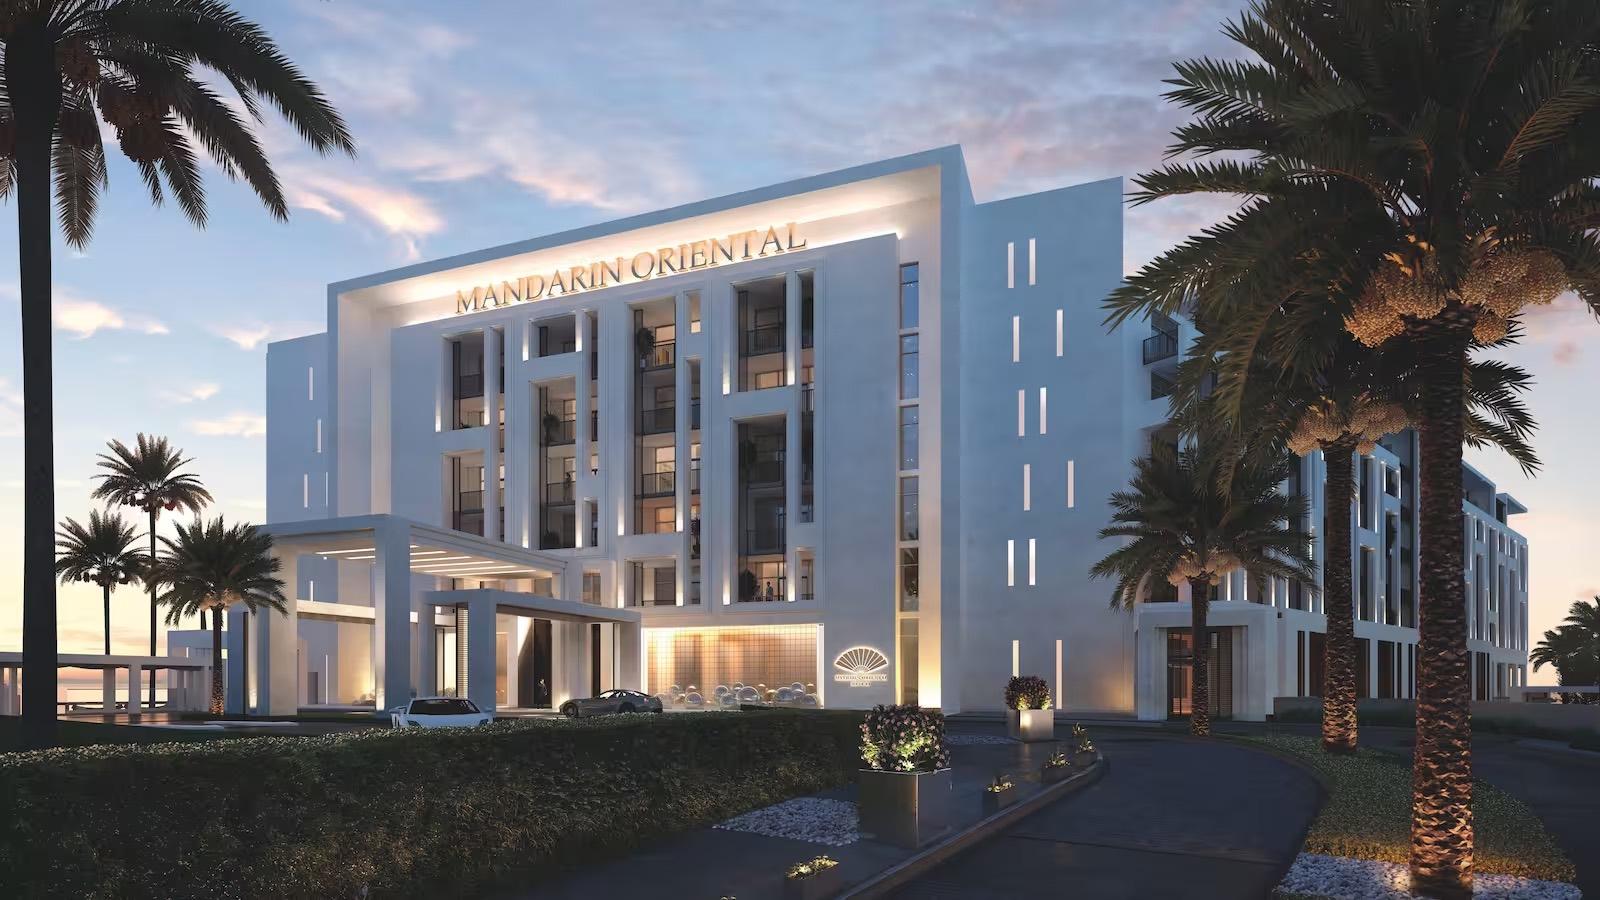 Luxury hotel Mandarin Oriental, Muscat is opening in Oman 